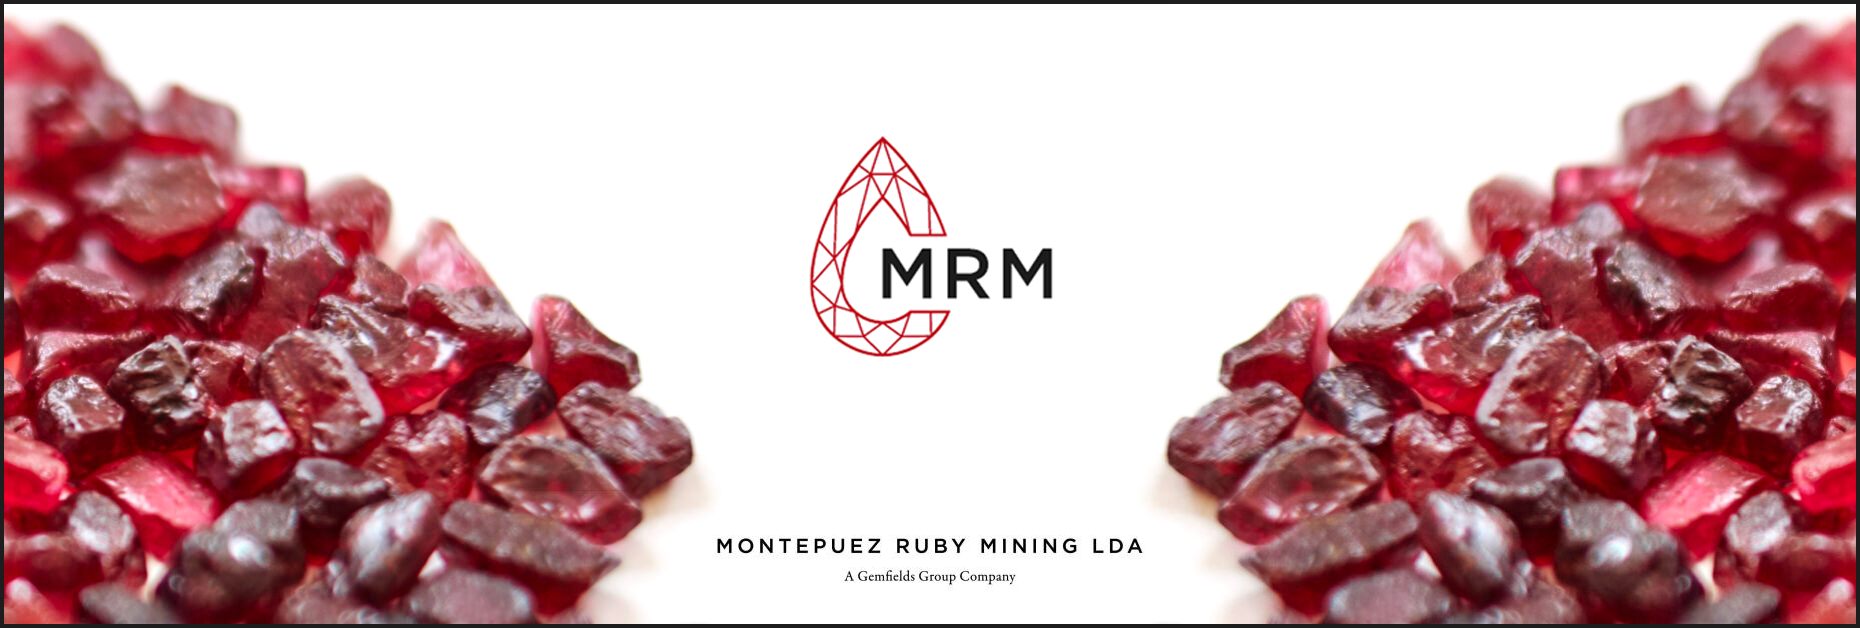 Montepuez Ruby Mining